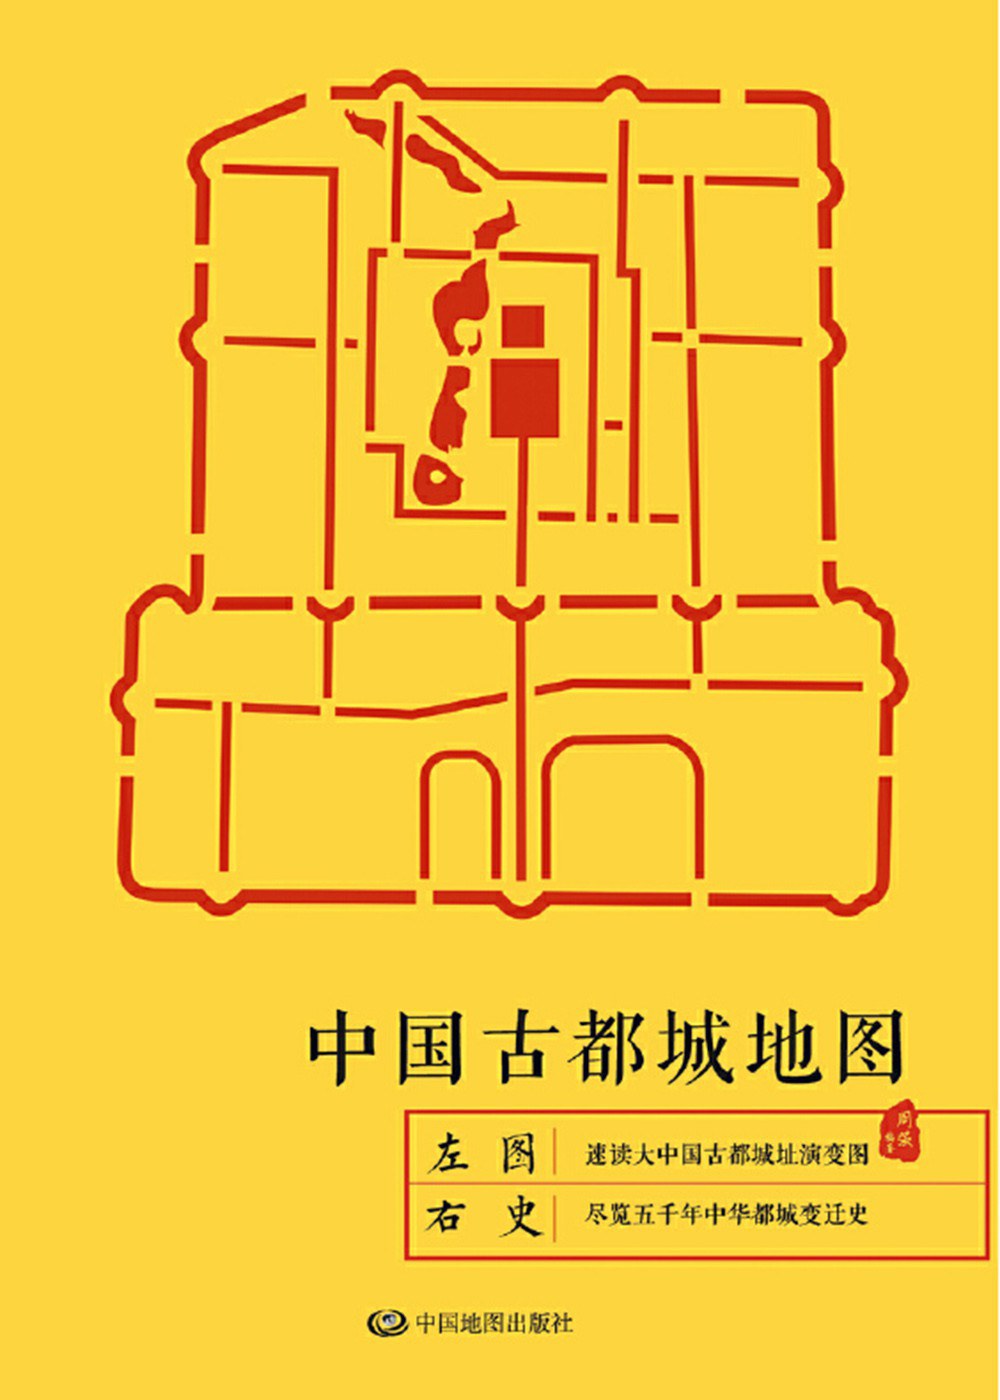 中国古都城地图